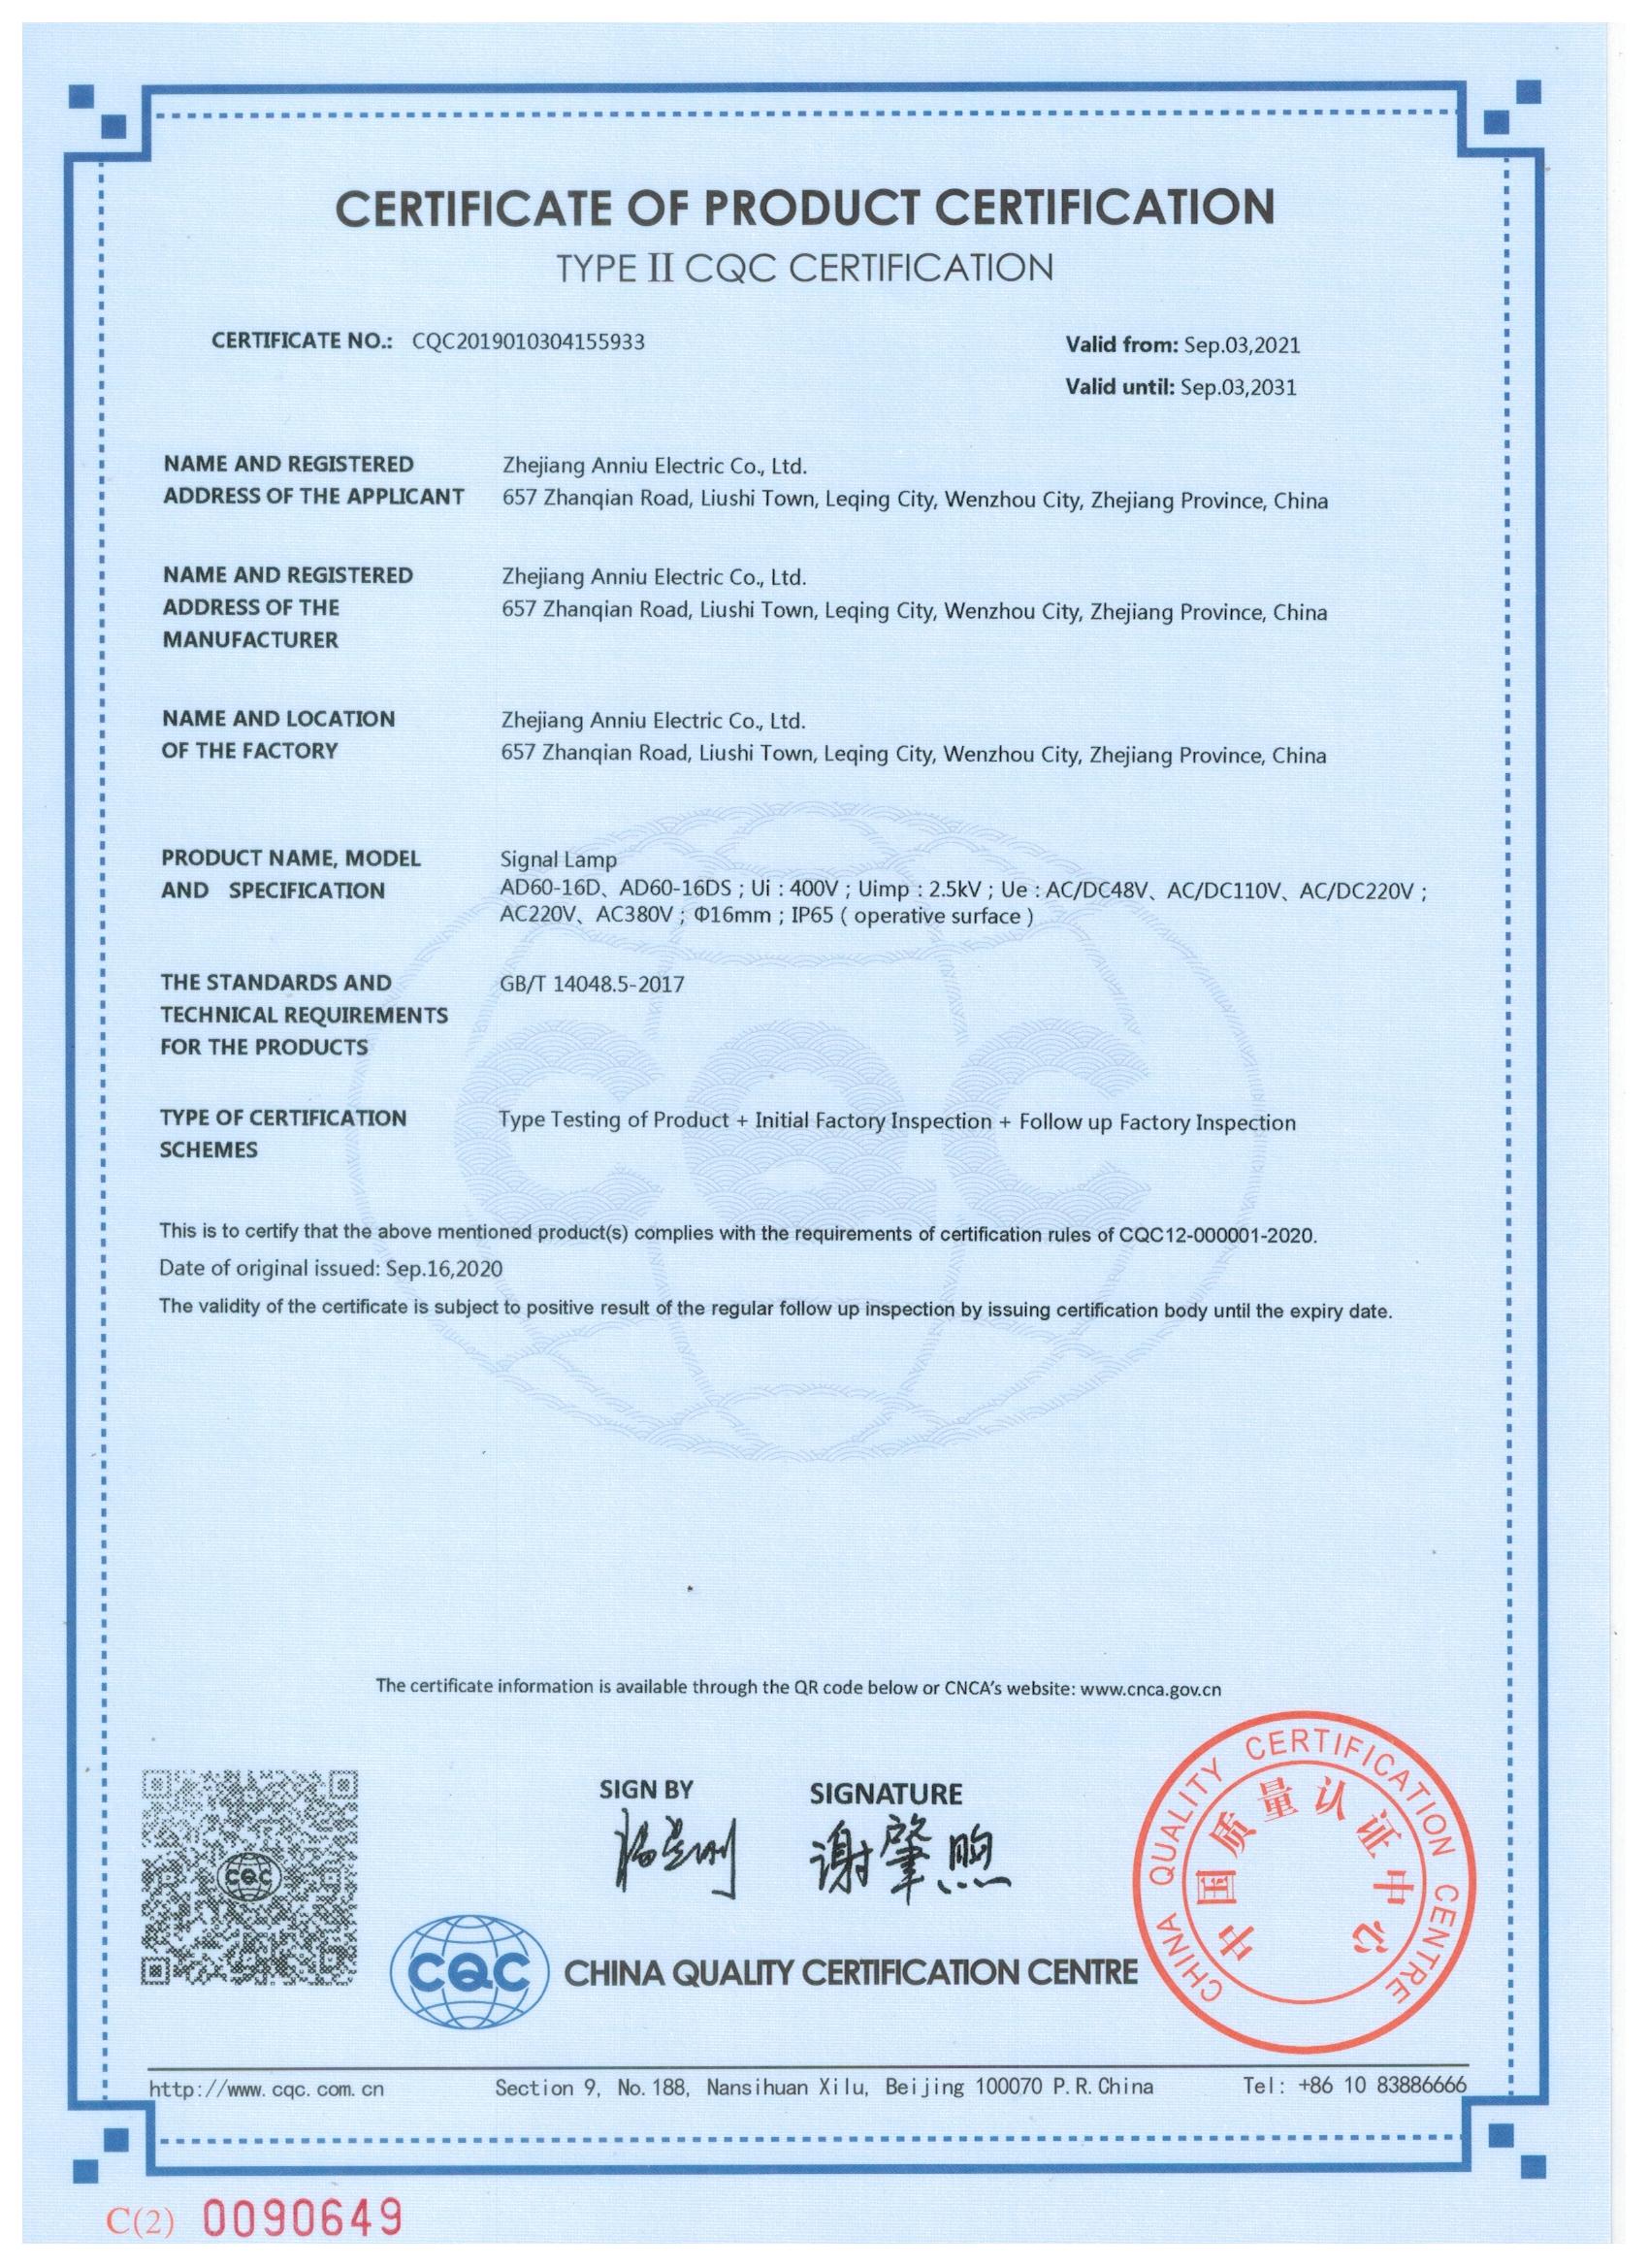 信号灯AD60-16D 自愿认证CQC证书